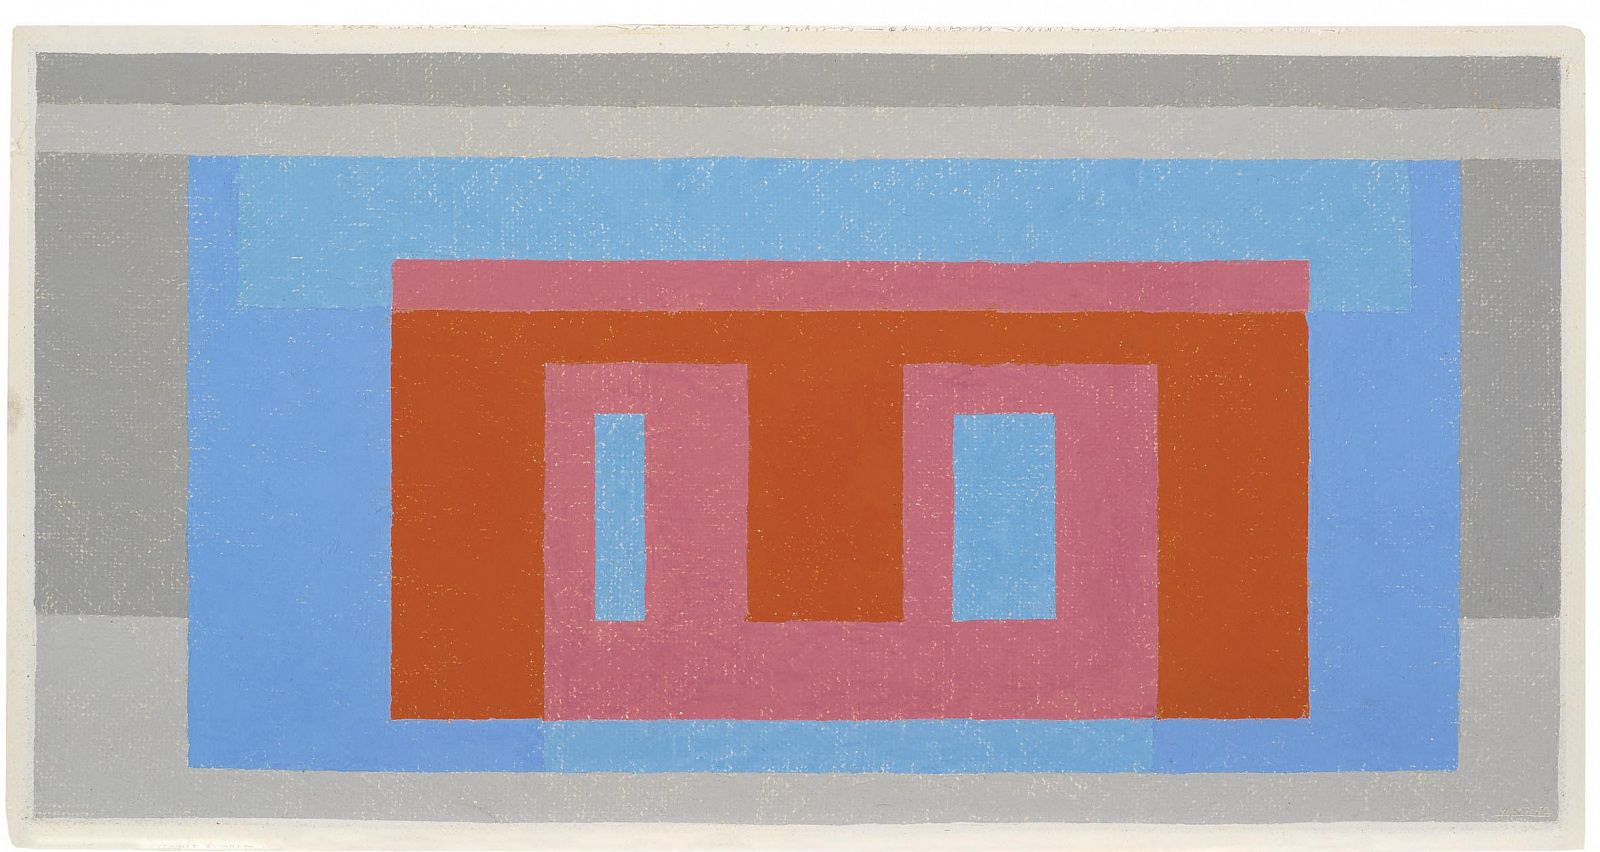 'Día luminoso' (1947-52), Josef Albers.